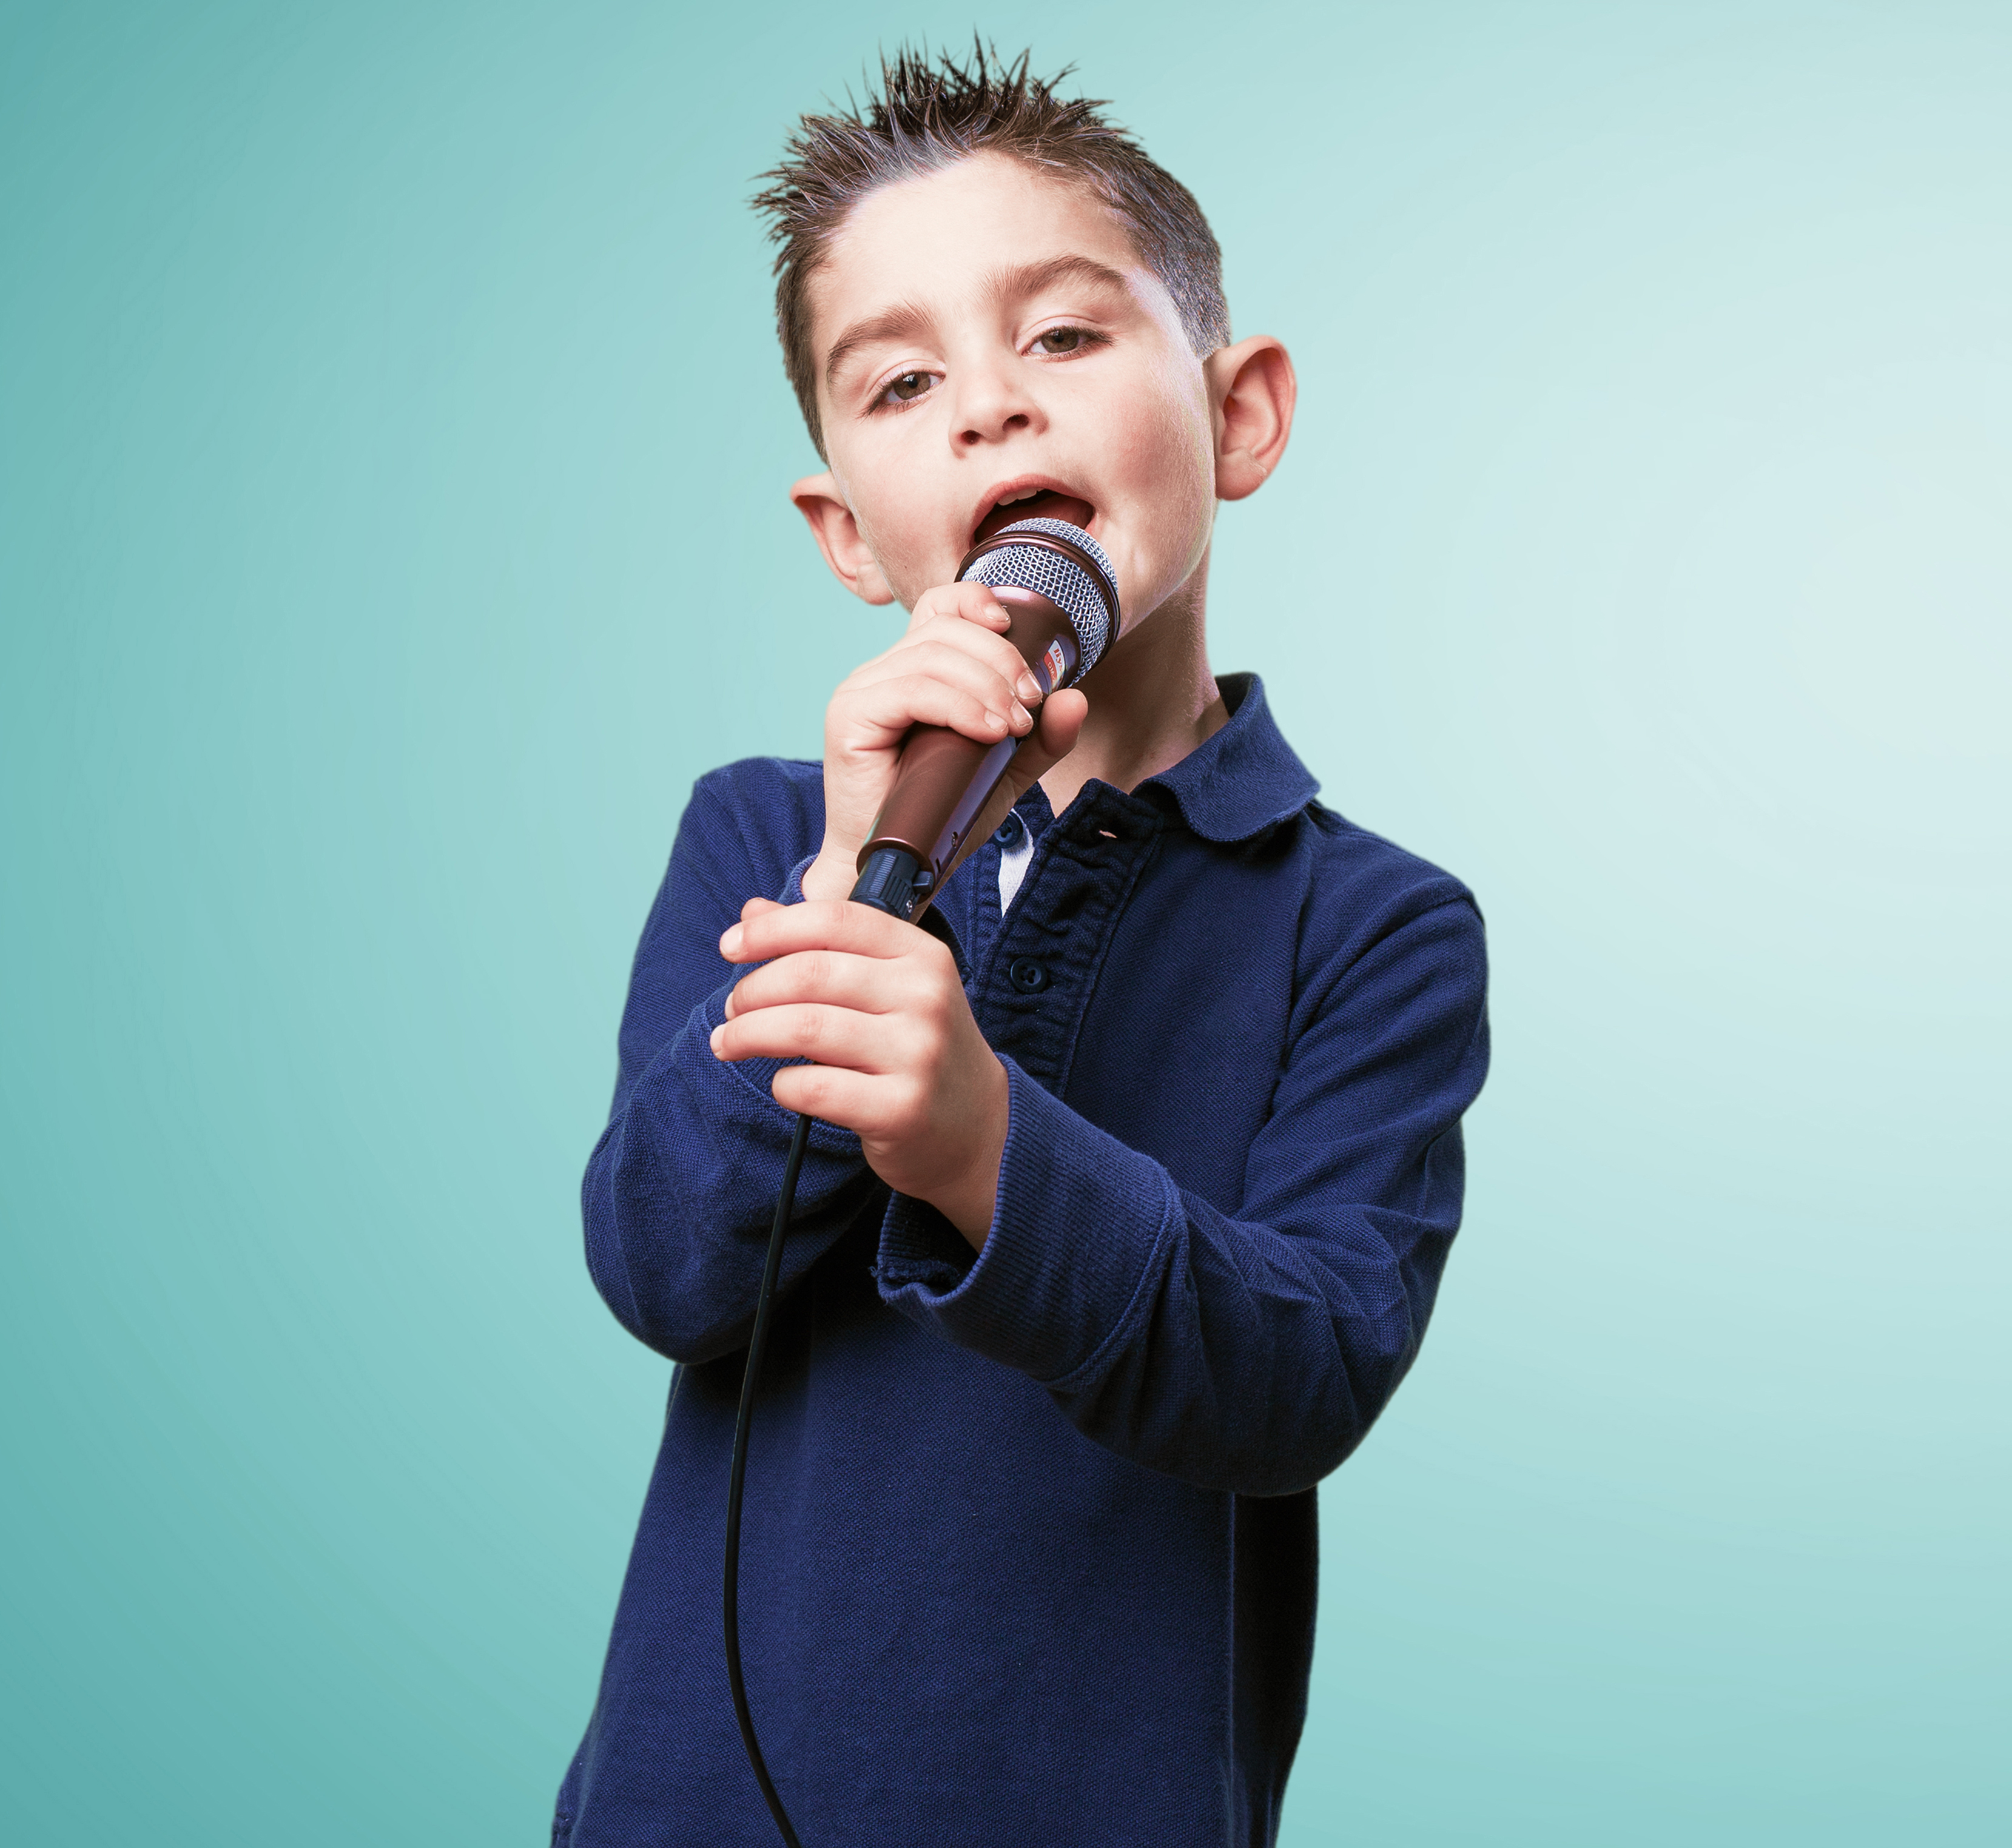 Поют юноши. Дети поют. Мальчик певец. Вокал дети. Ребенок с микрофоном.